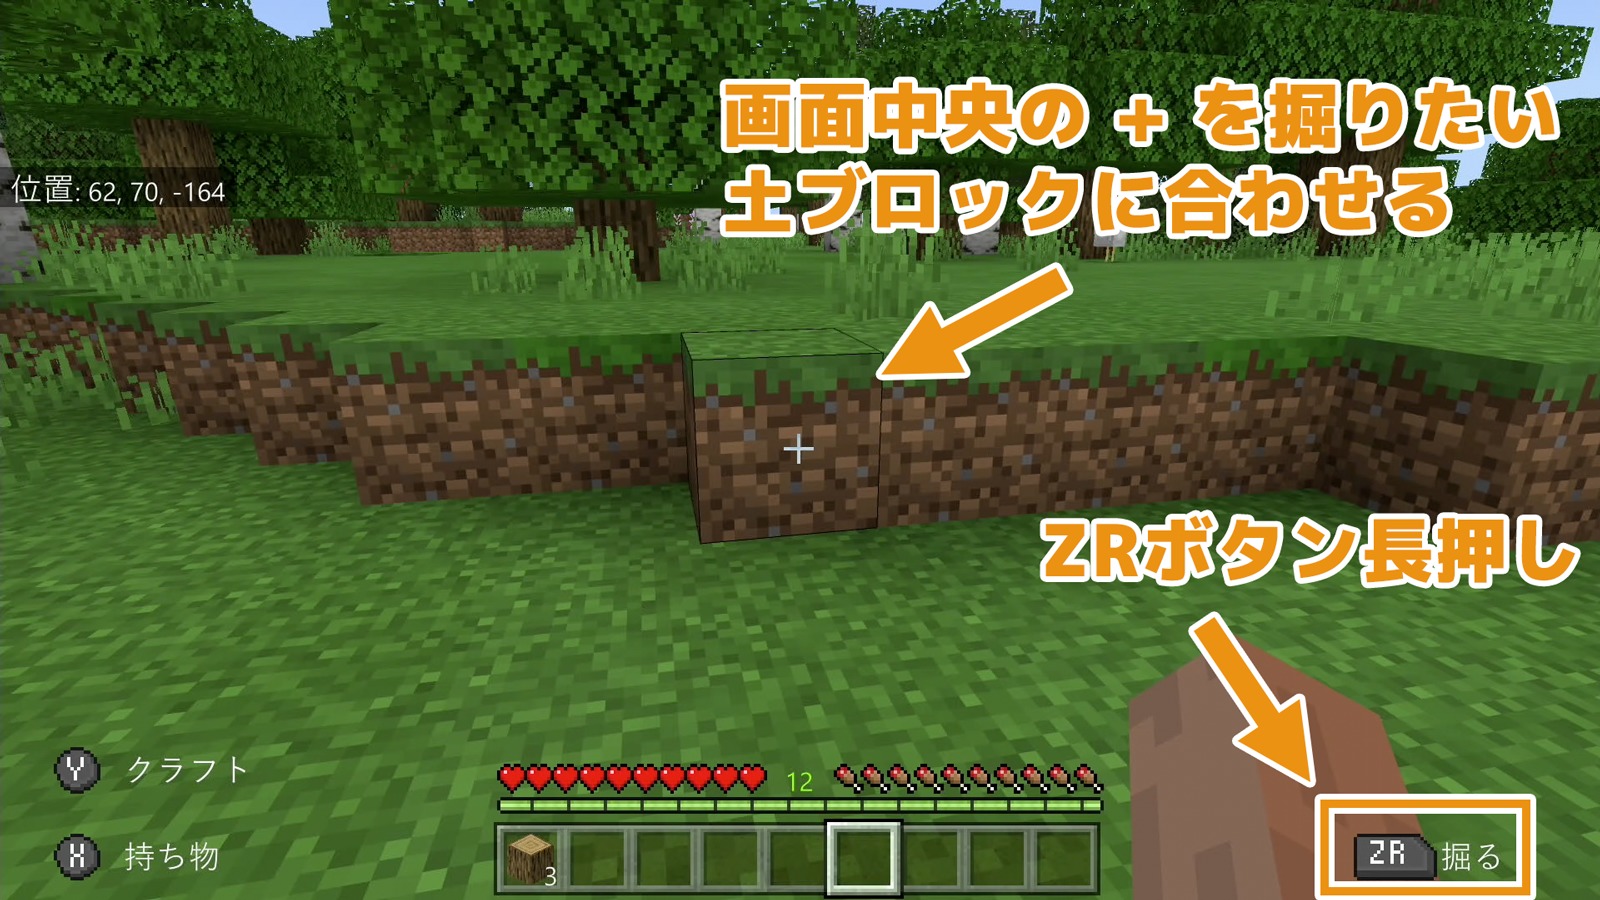 マインクラフト 土を掘る方法 Switch Akatsuki Games